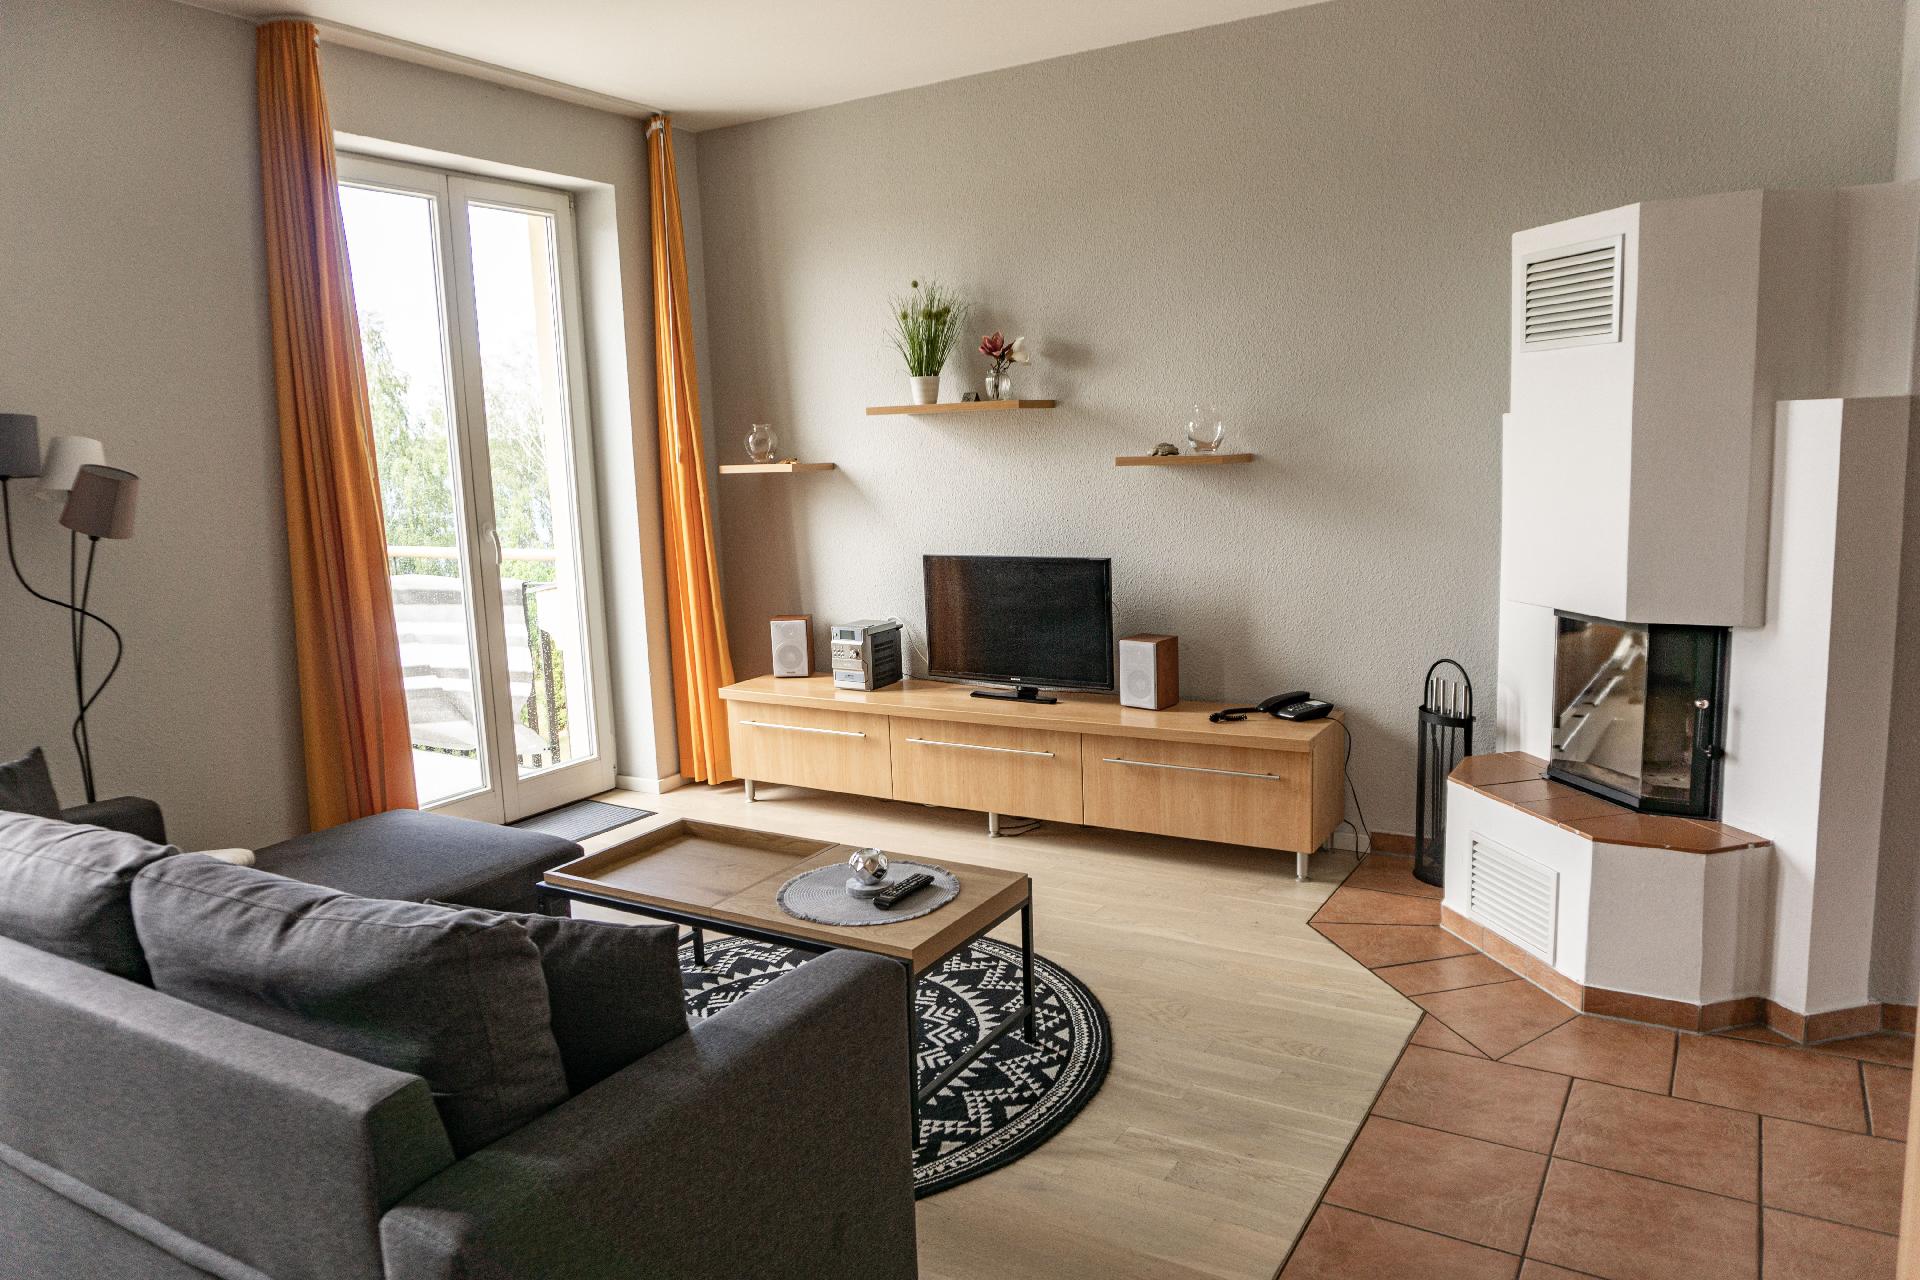 Nette Wohnung in Rheinsberg mit Terrasse und Grill Ferienwohnung in Mecklenburg Vorpommern